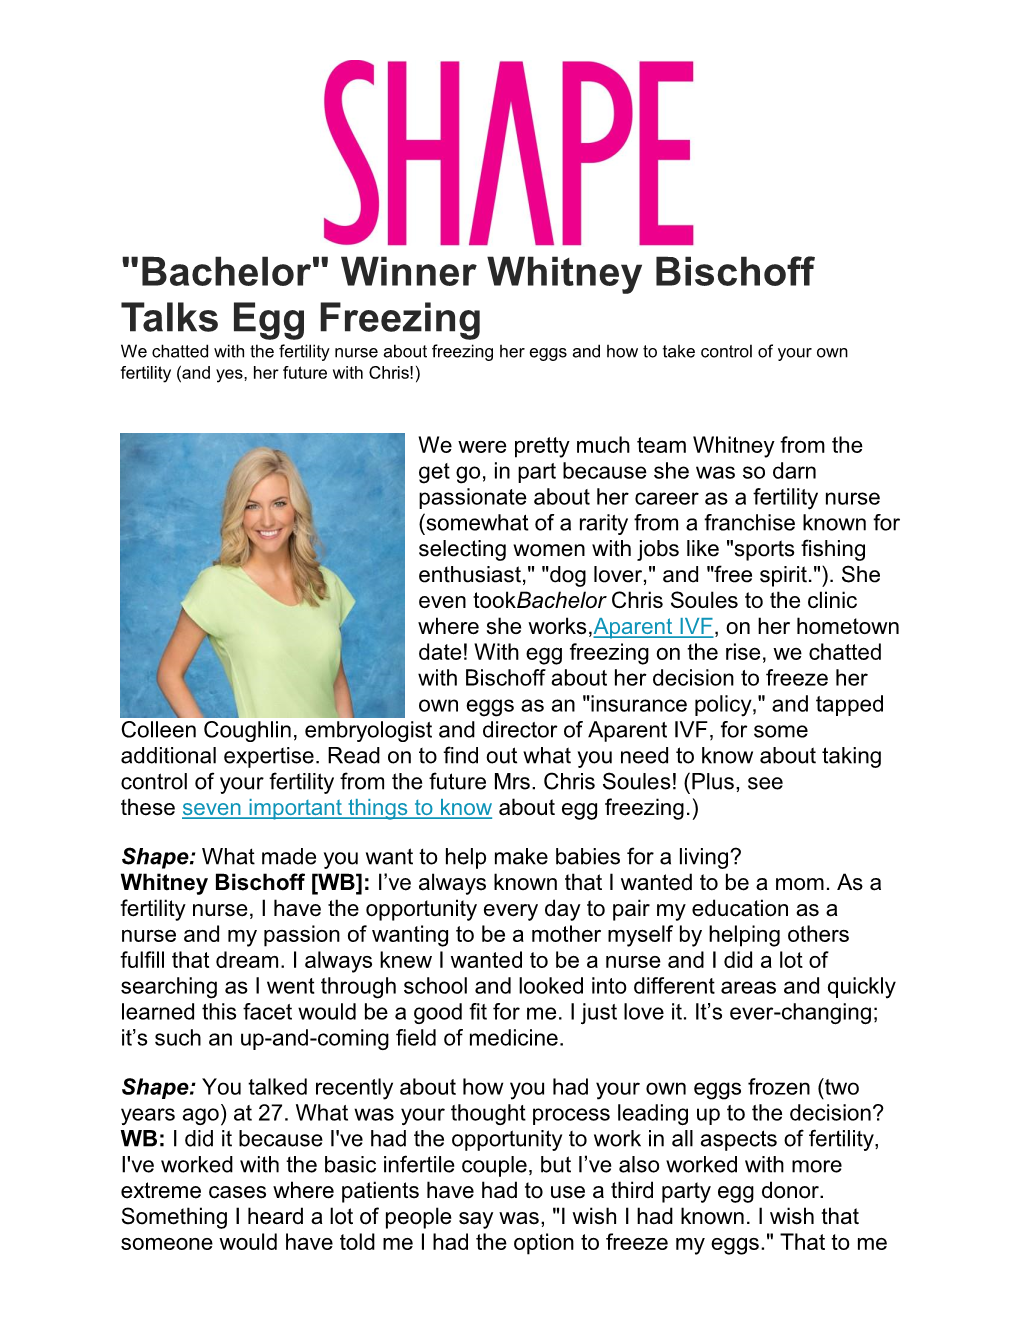 "Bachelor" Winner Whitney Bischoff Talks Egg Freezing